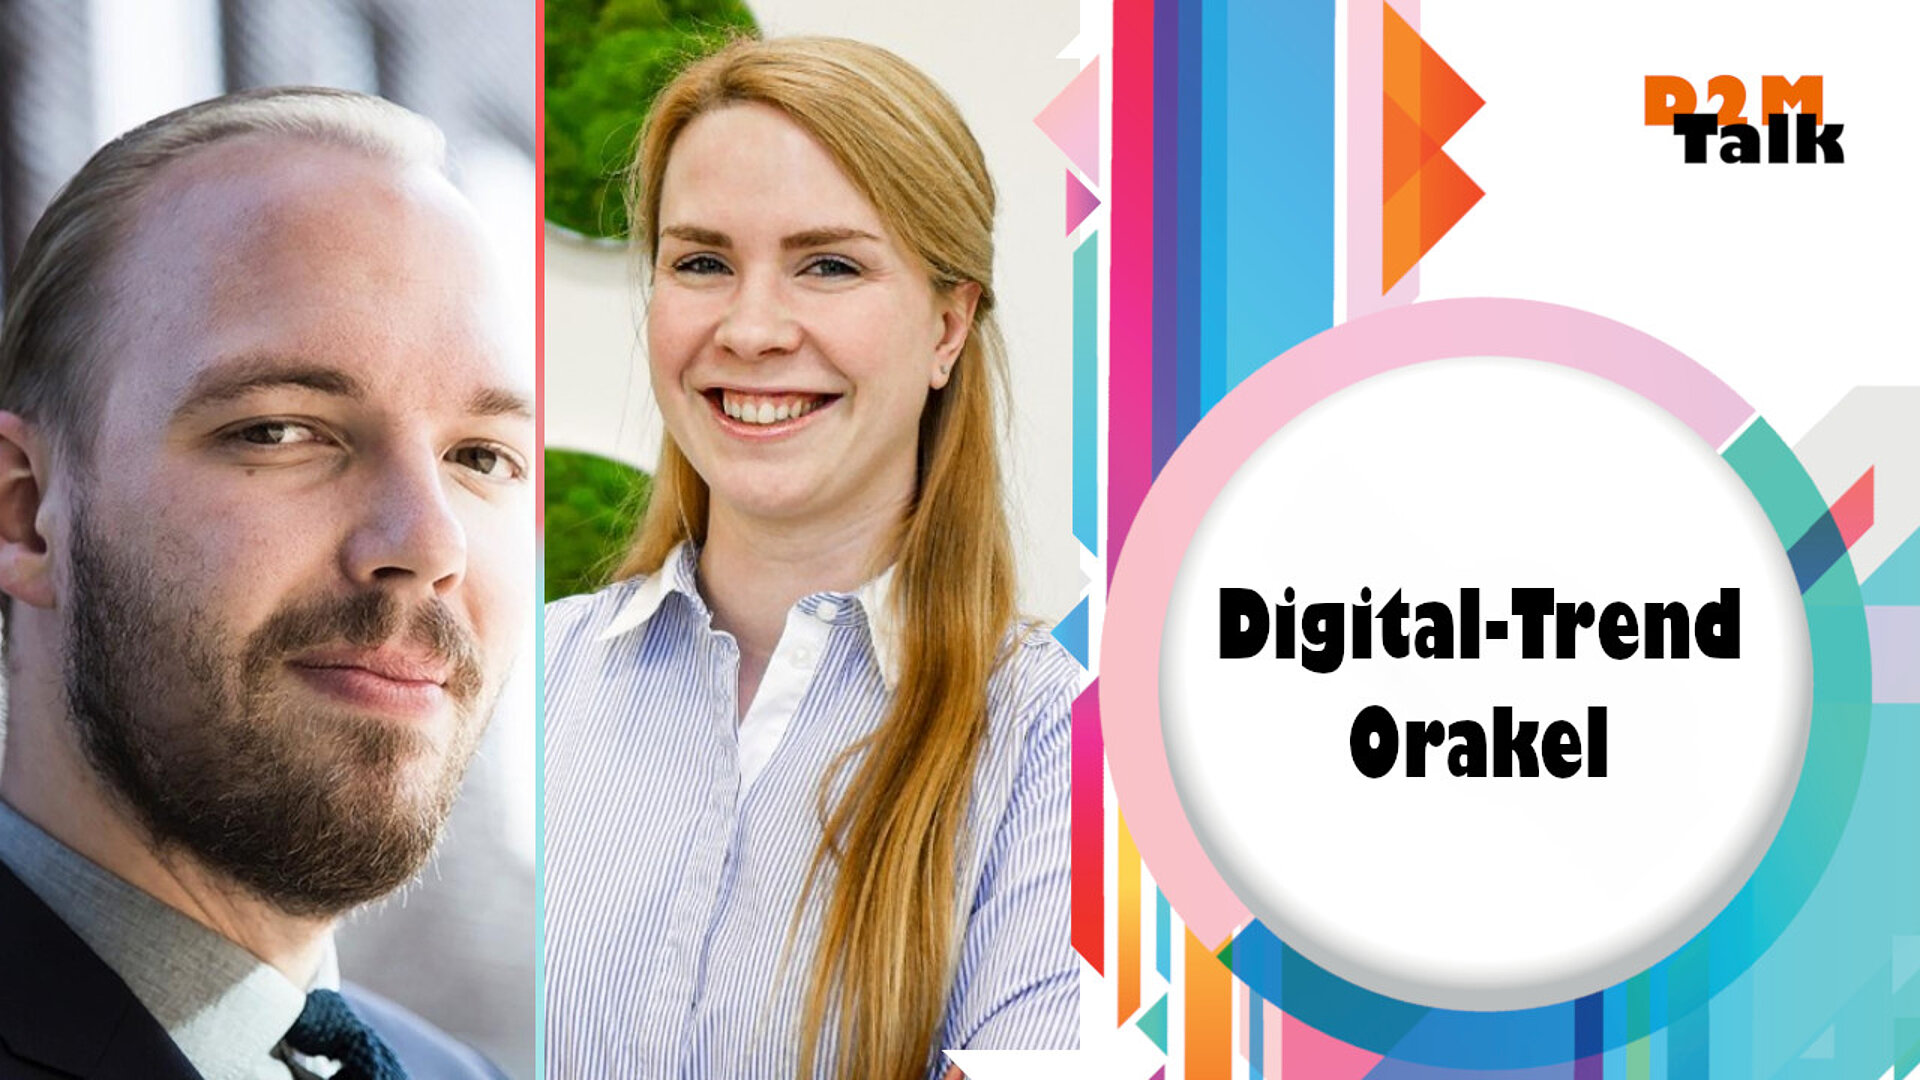 Wir befragen unsere Digital-Trend-Orakel Stefanie Söhnchen und Daniel Rehn